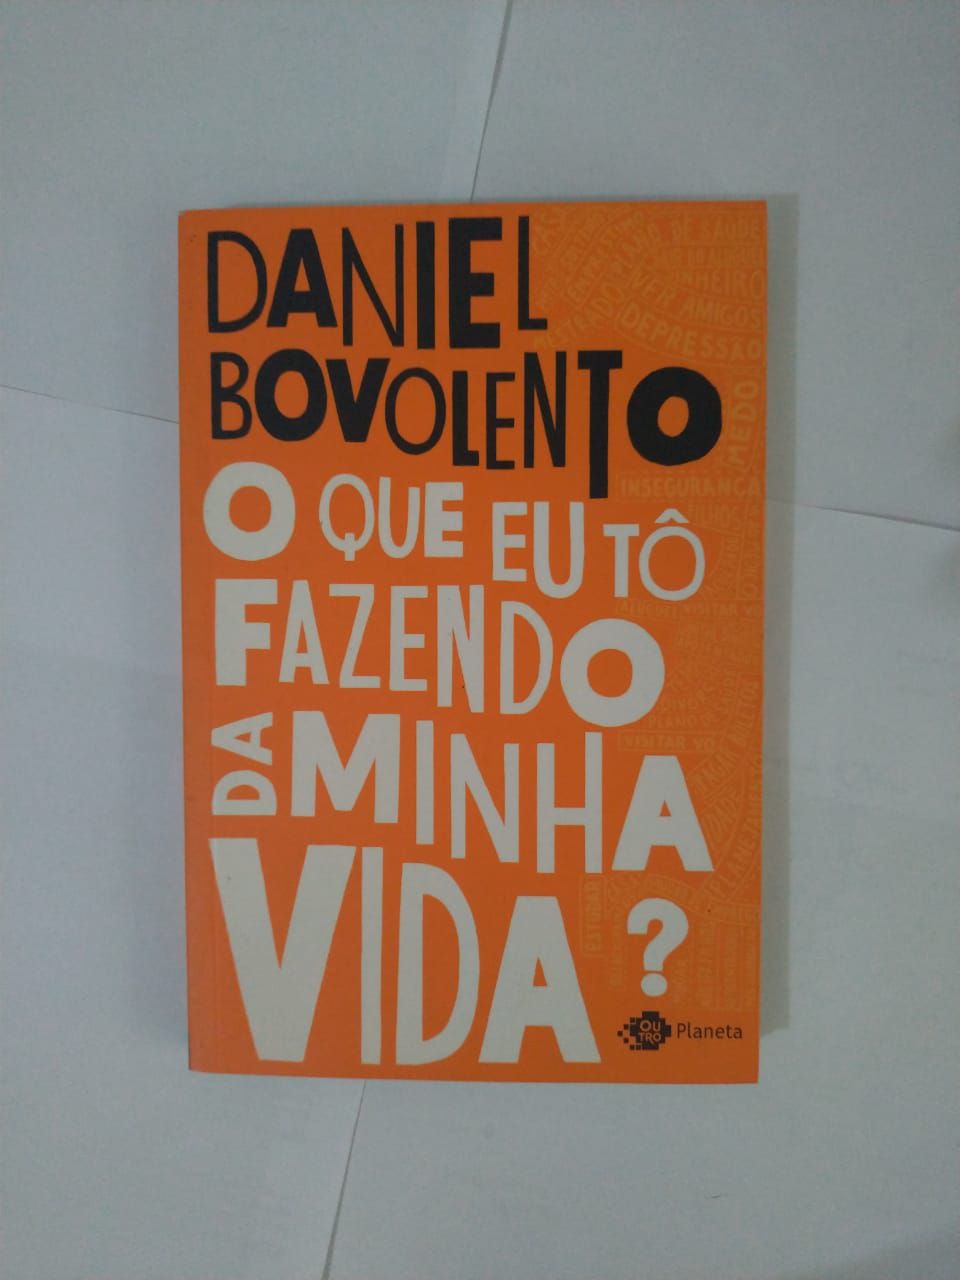 Daniel Bovolento 🏳️‍🌈 on X: Eu não sei nem como dizer isso de